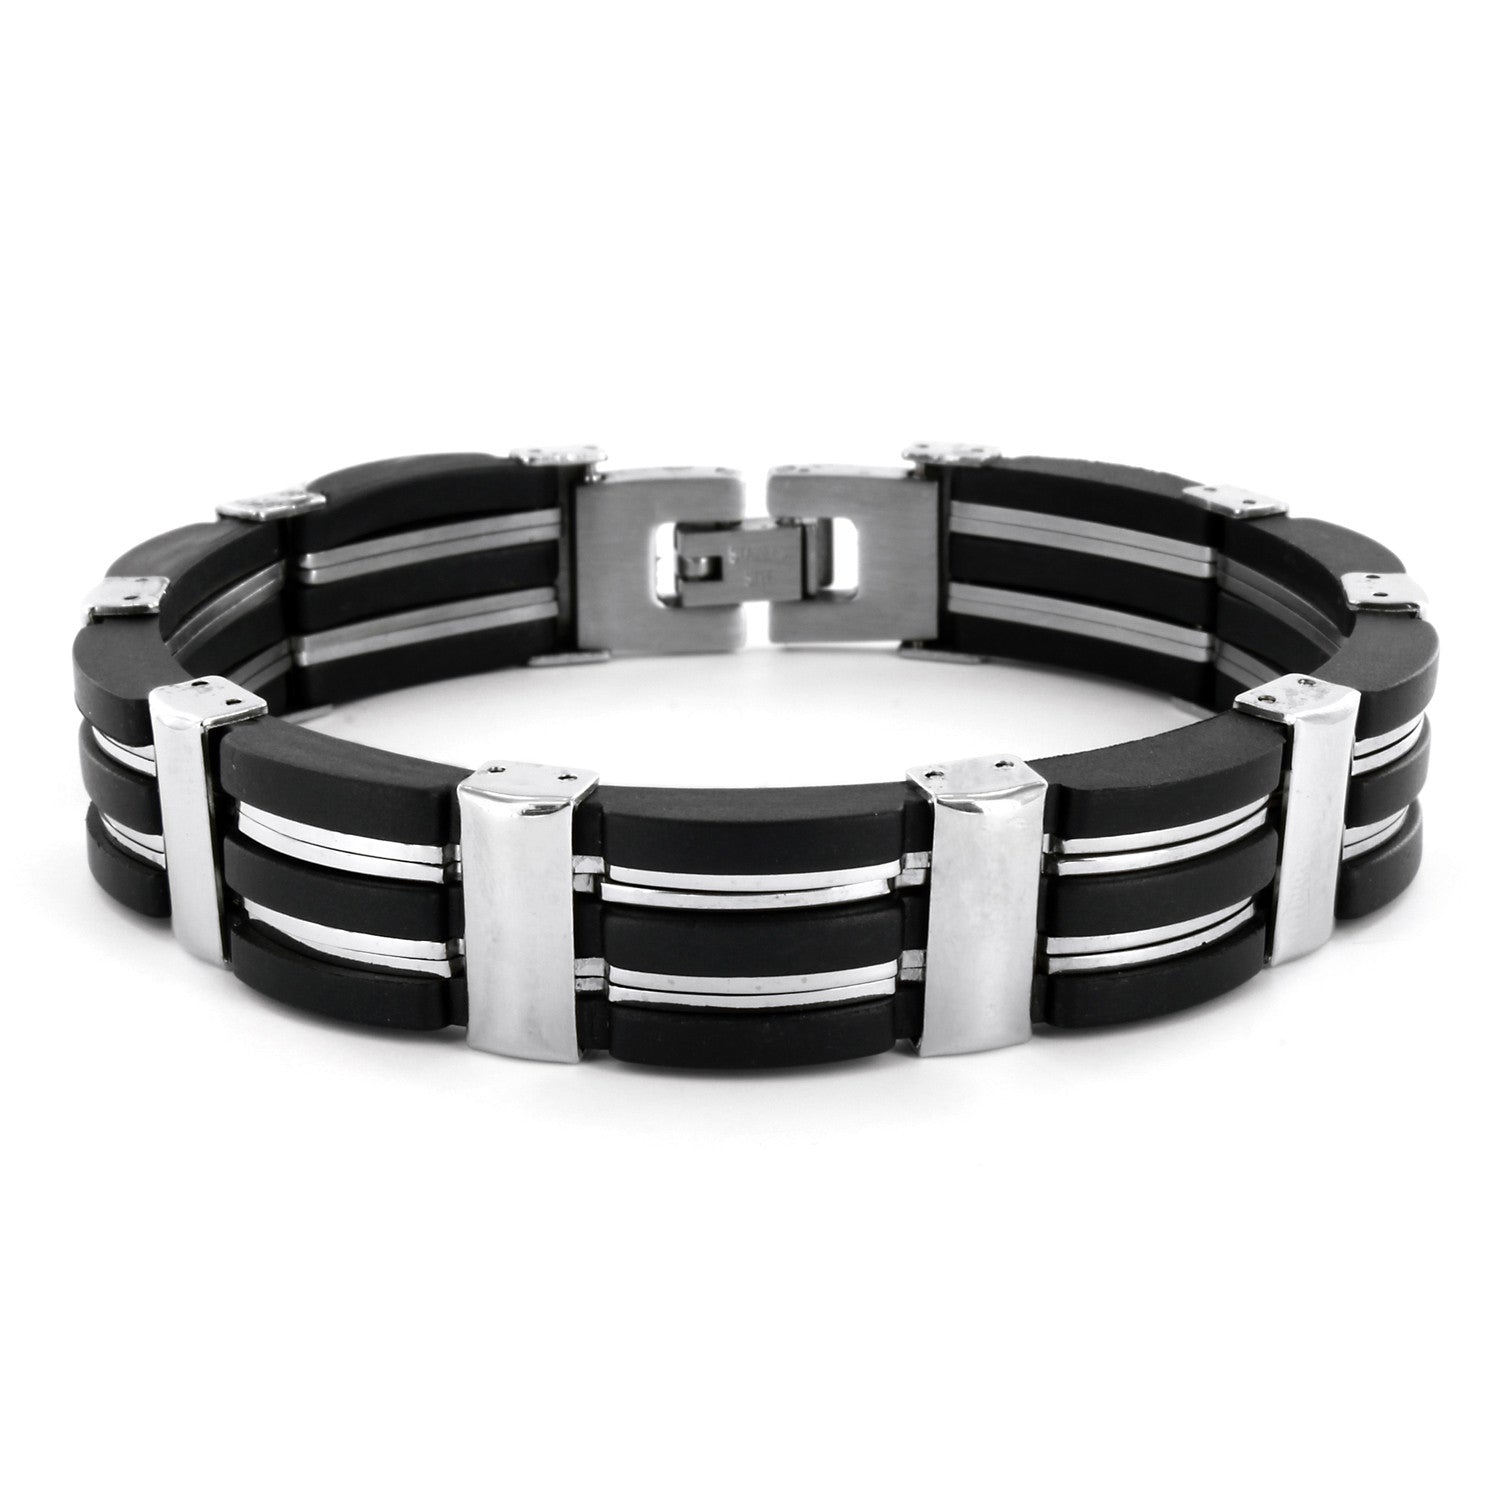 B047003 - Men's Stainless Steel and Black Rubber Bracelet